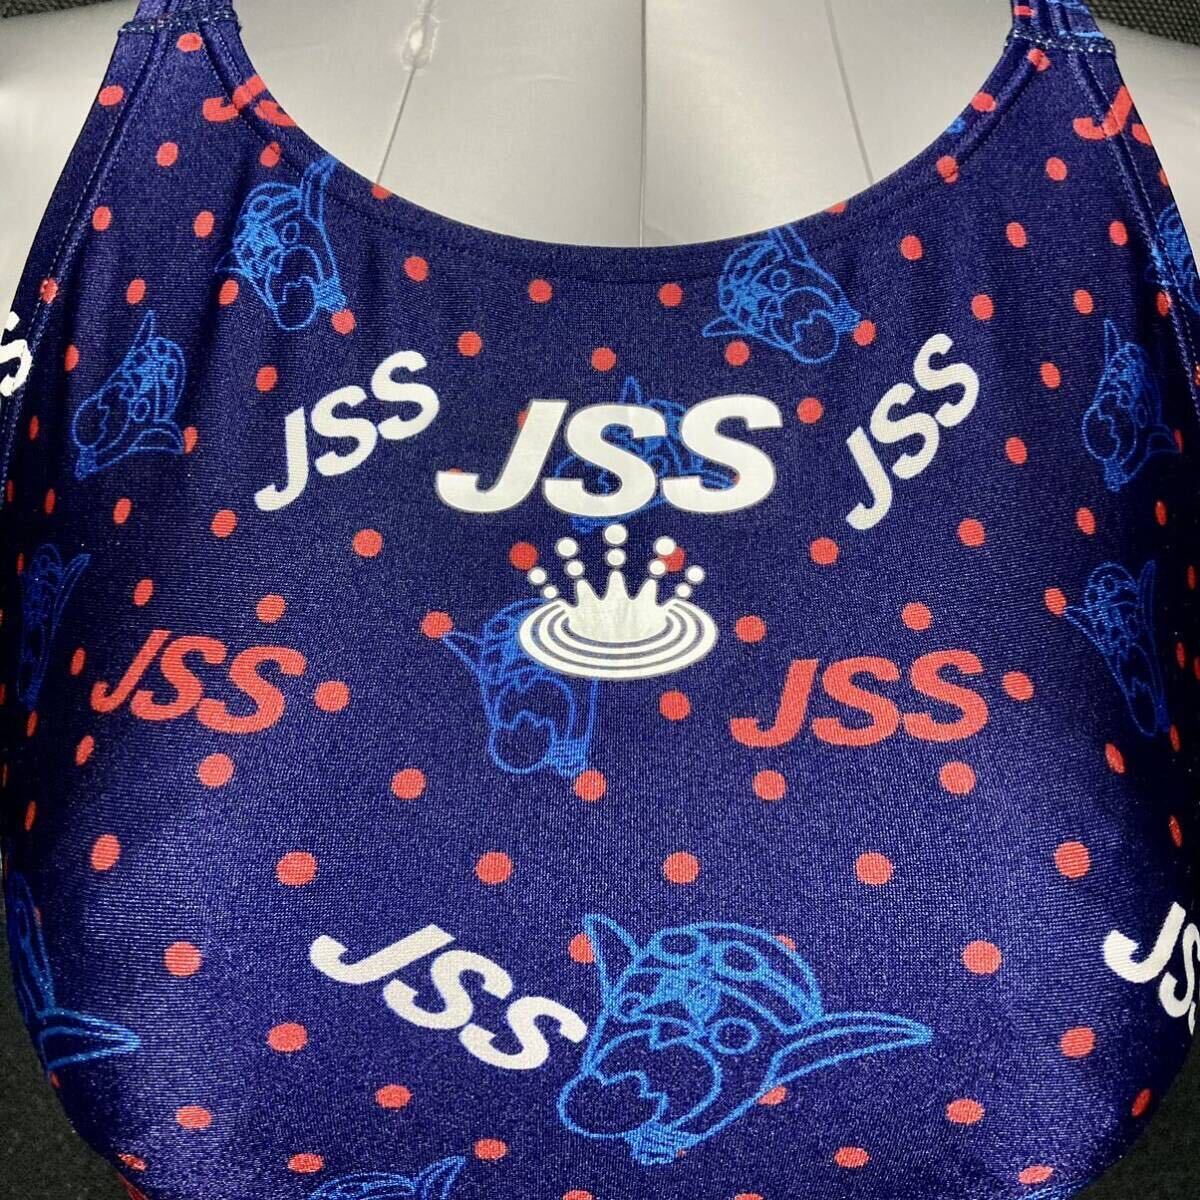 JSS 指定水着 女子 XOサイズ 成人用 特大サイズ MIZUNO ミズノ 競泳水着 スコーパー ジェイエスエス スイミングスクールの画像4